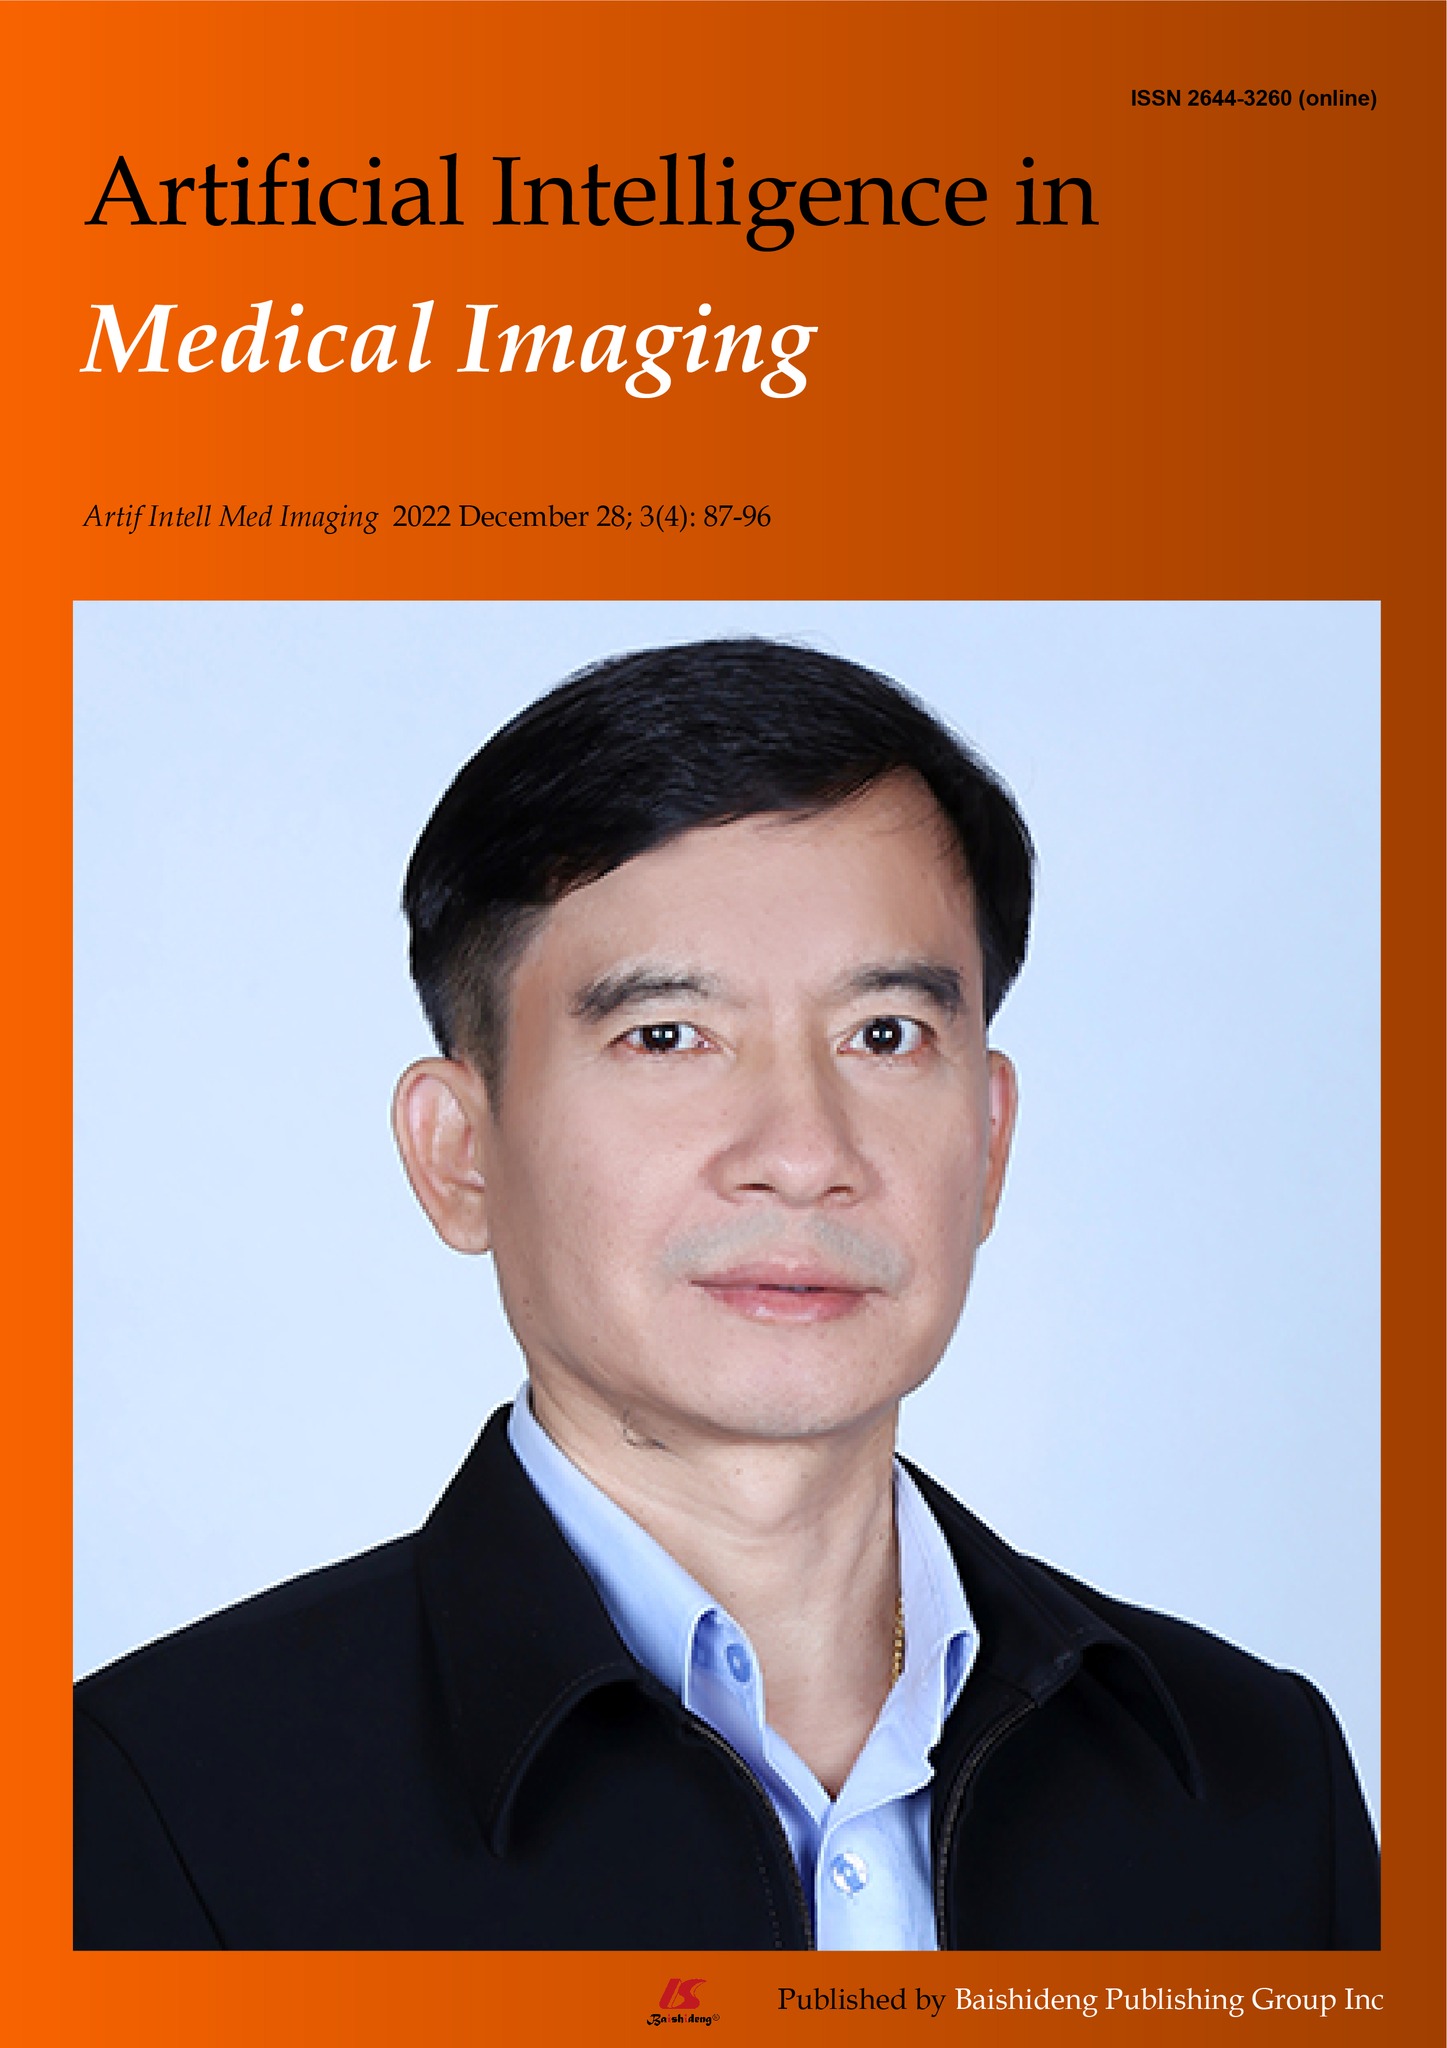  รองศาสตราจารย์ ดร. สุชาติ  โกทันย์ ได้ขึ้นปกวารสารวิชาการระดับนานาชาติ  Artificial Intelligence in Medical Imaging (AIMI, Artif Intell Med Imaging) ฉบับล่าสุด